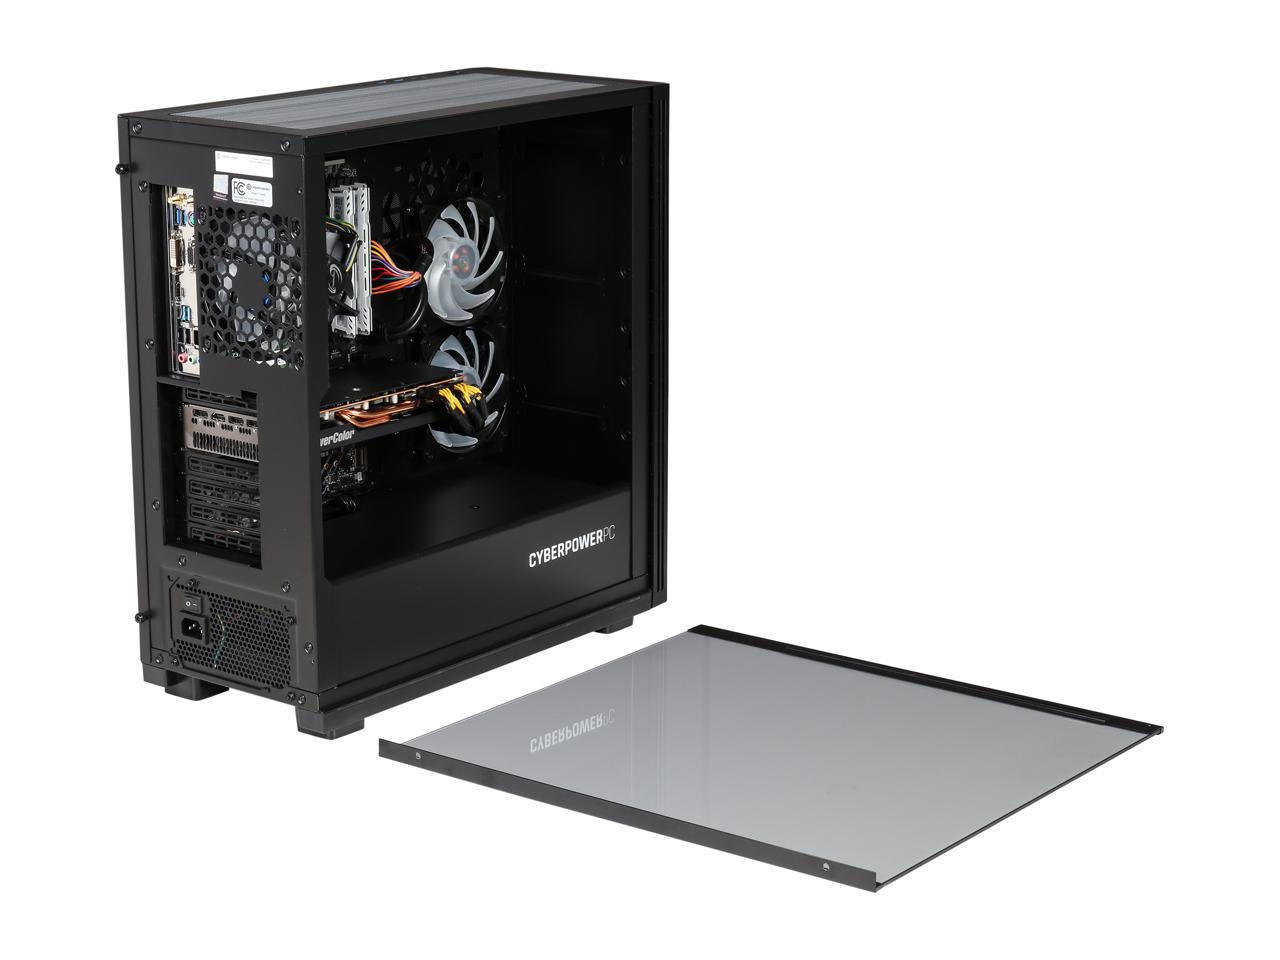 CyberpowerPC - Gaming Desktop PC - Intel Core i5-9600K (3.70 GHz) AMD